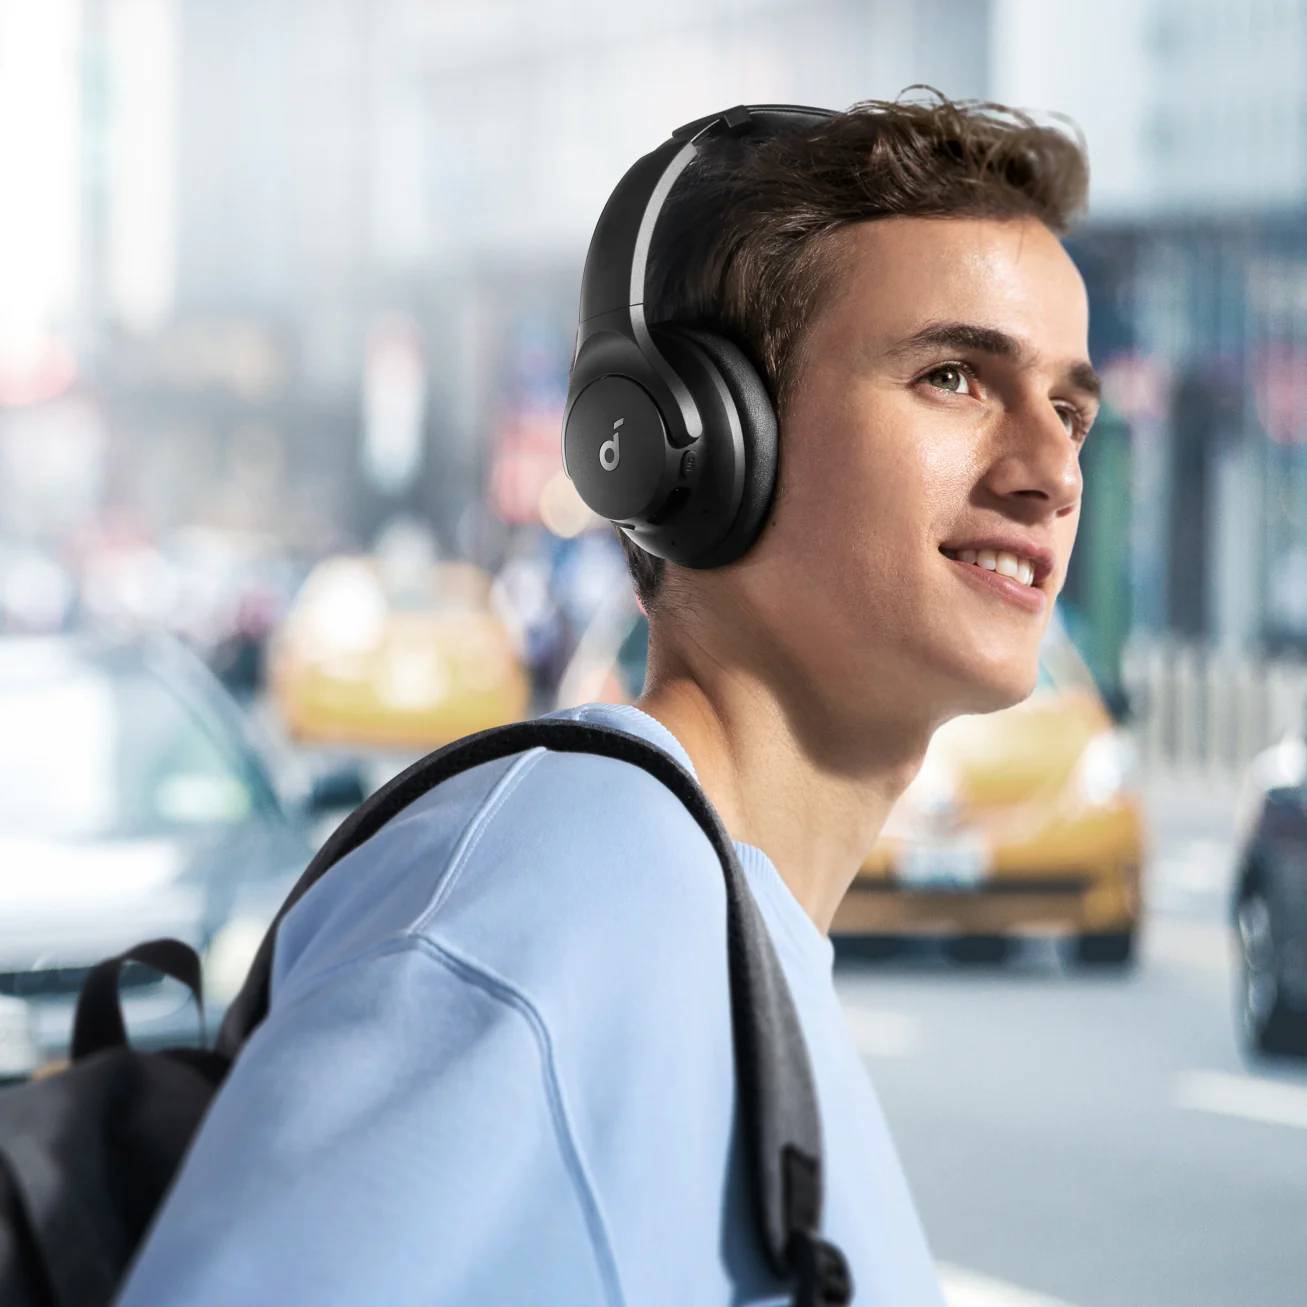 Soundcore Q20i kulaklık, hibrit aktif gürültü engelleme teknolojisi sayesinde gerçek zamanlı olarak sesleri etkili bir şekilde engeller. Bu özellikle dış gürültüleri %90'a kadar azaltarak kullanıcının net ve sessiz bir ses deneyimi yaşamasını sağlar.